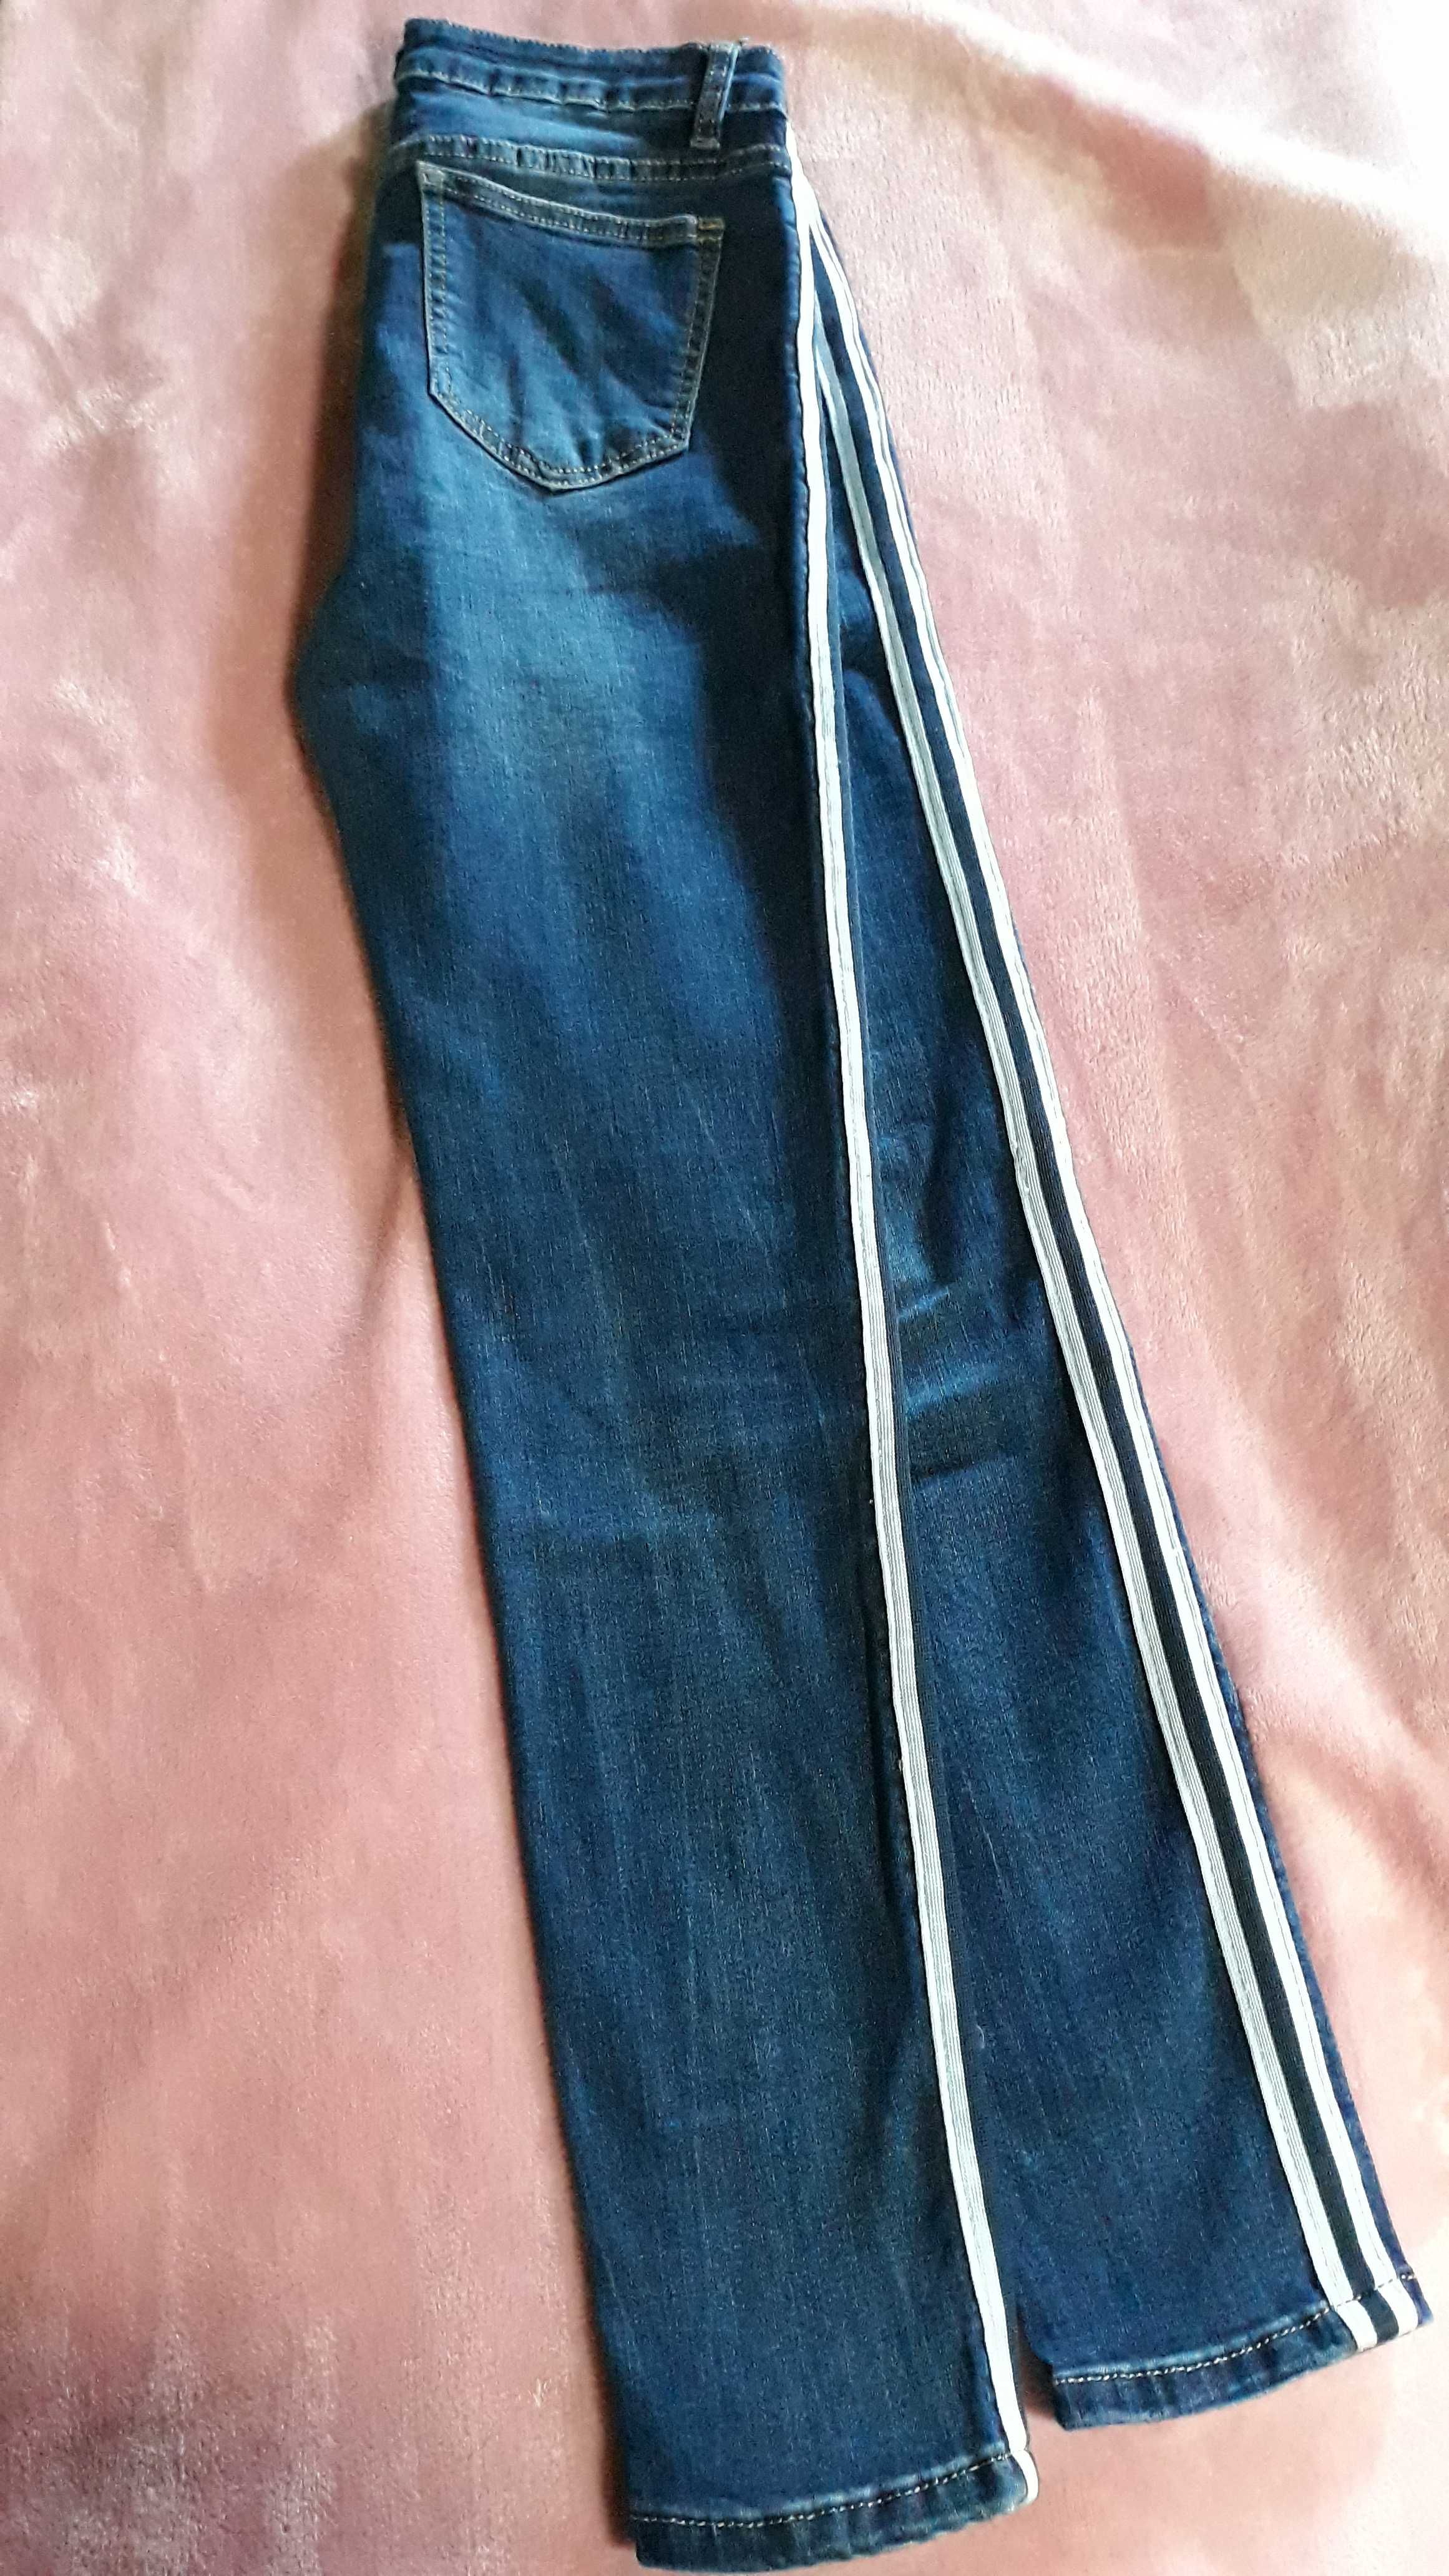 Jeans skinny cintura alta (6€) e camisa Zippy 16 anos (5€)